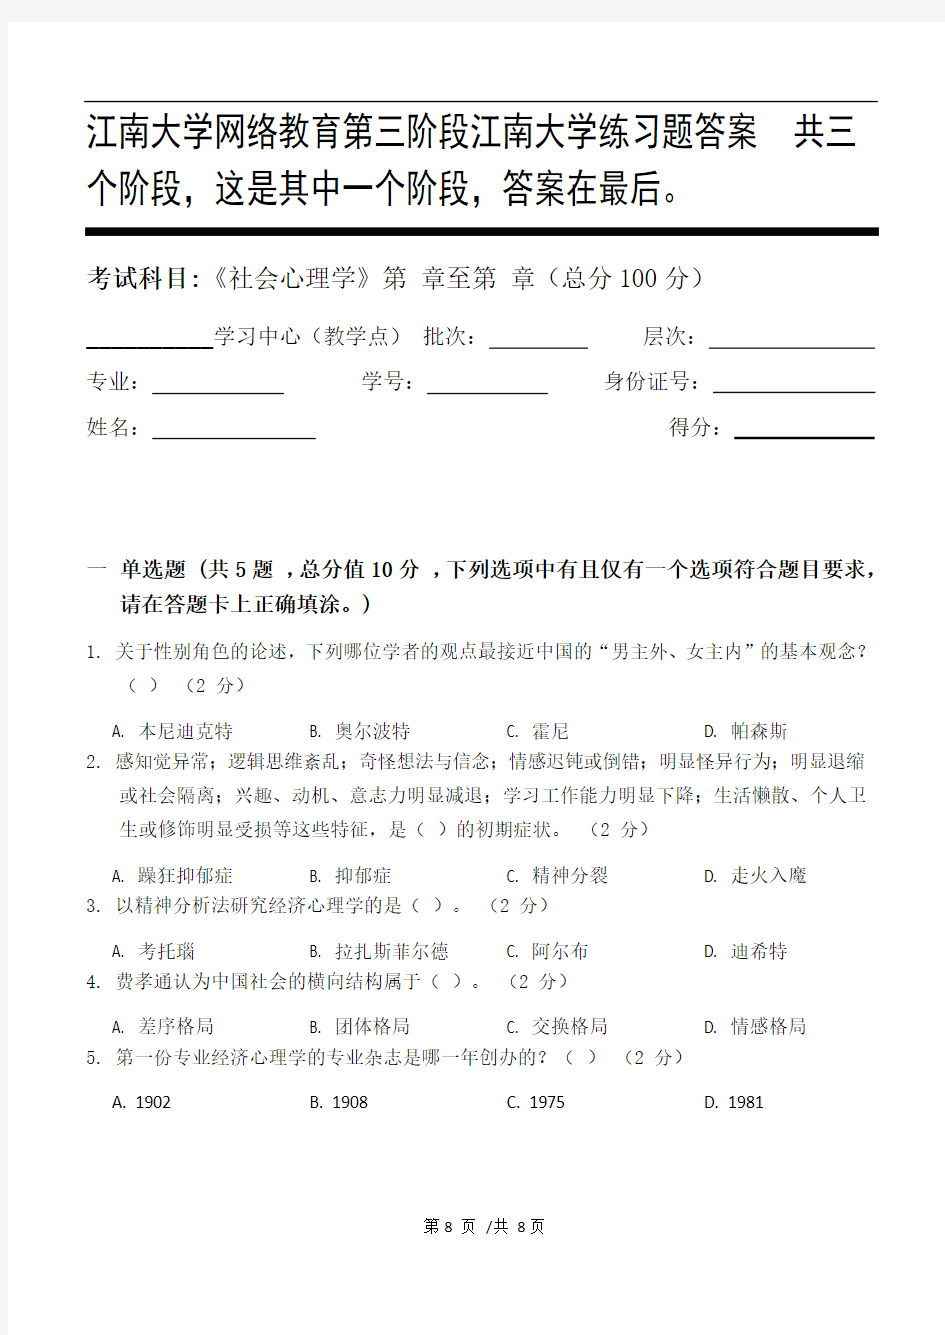 社会心理学第3阶段江南大学练习题答案  共三个阶段,这是其中一个阶段,答案在最后。